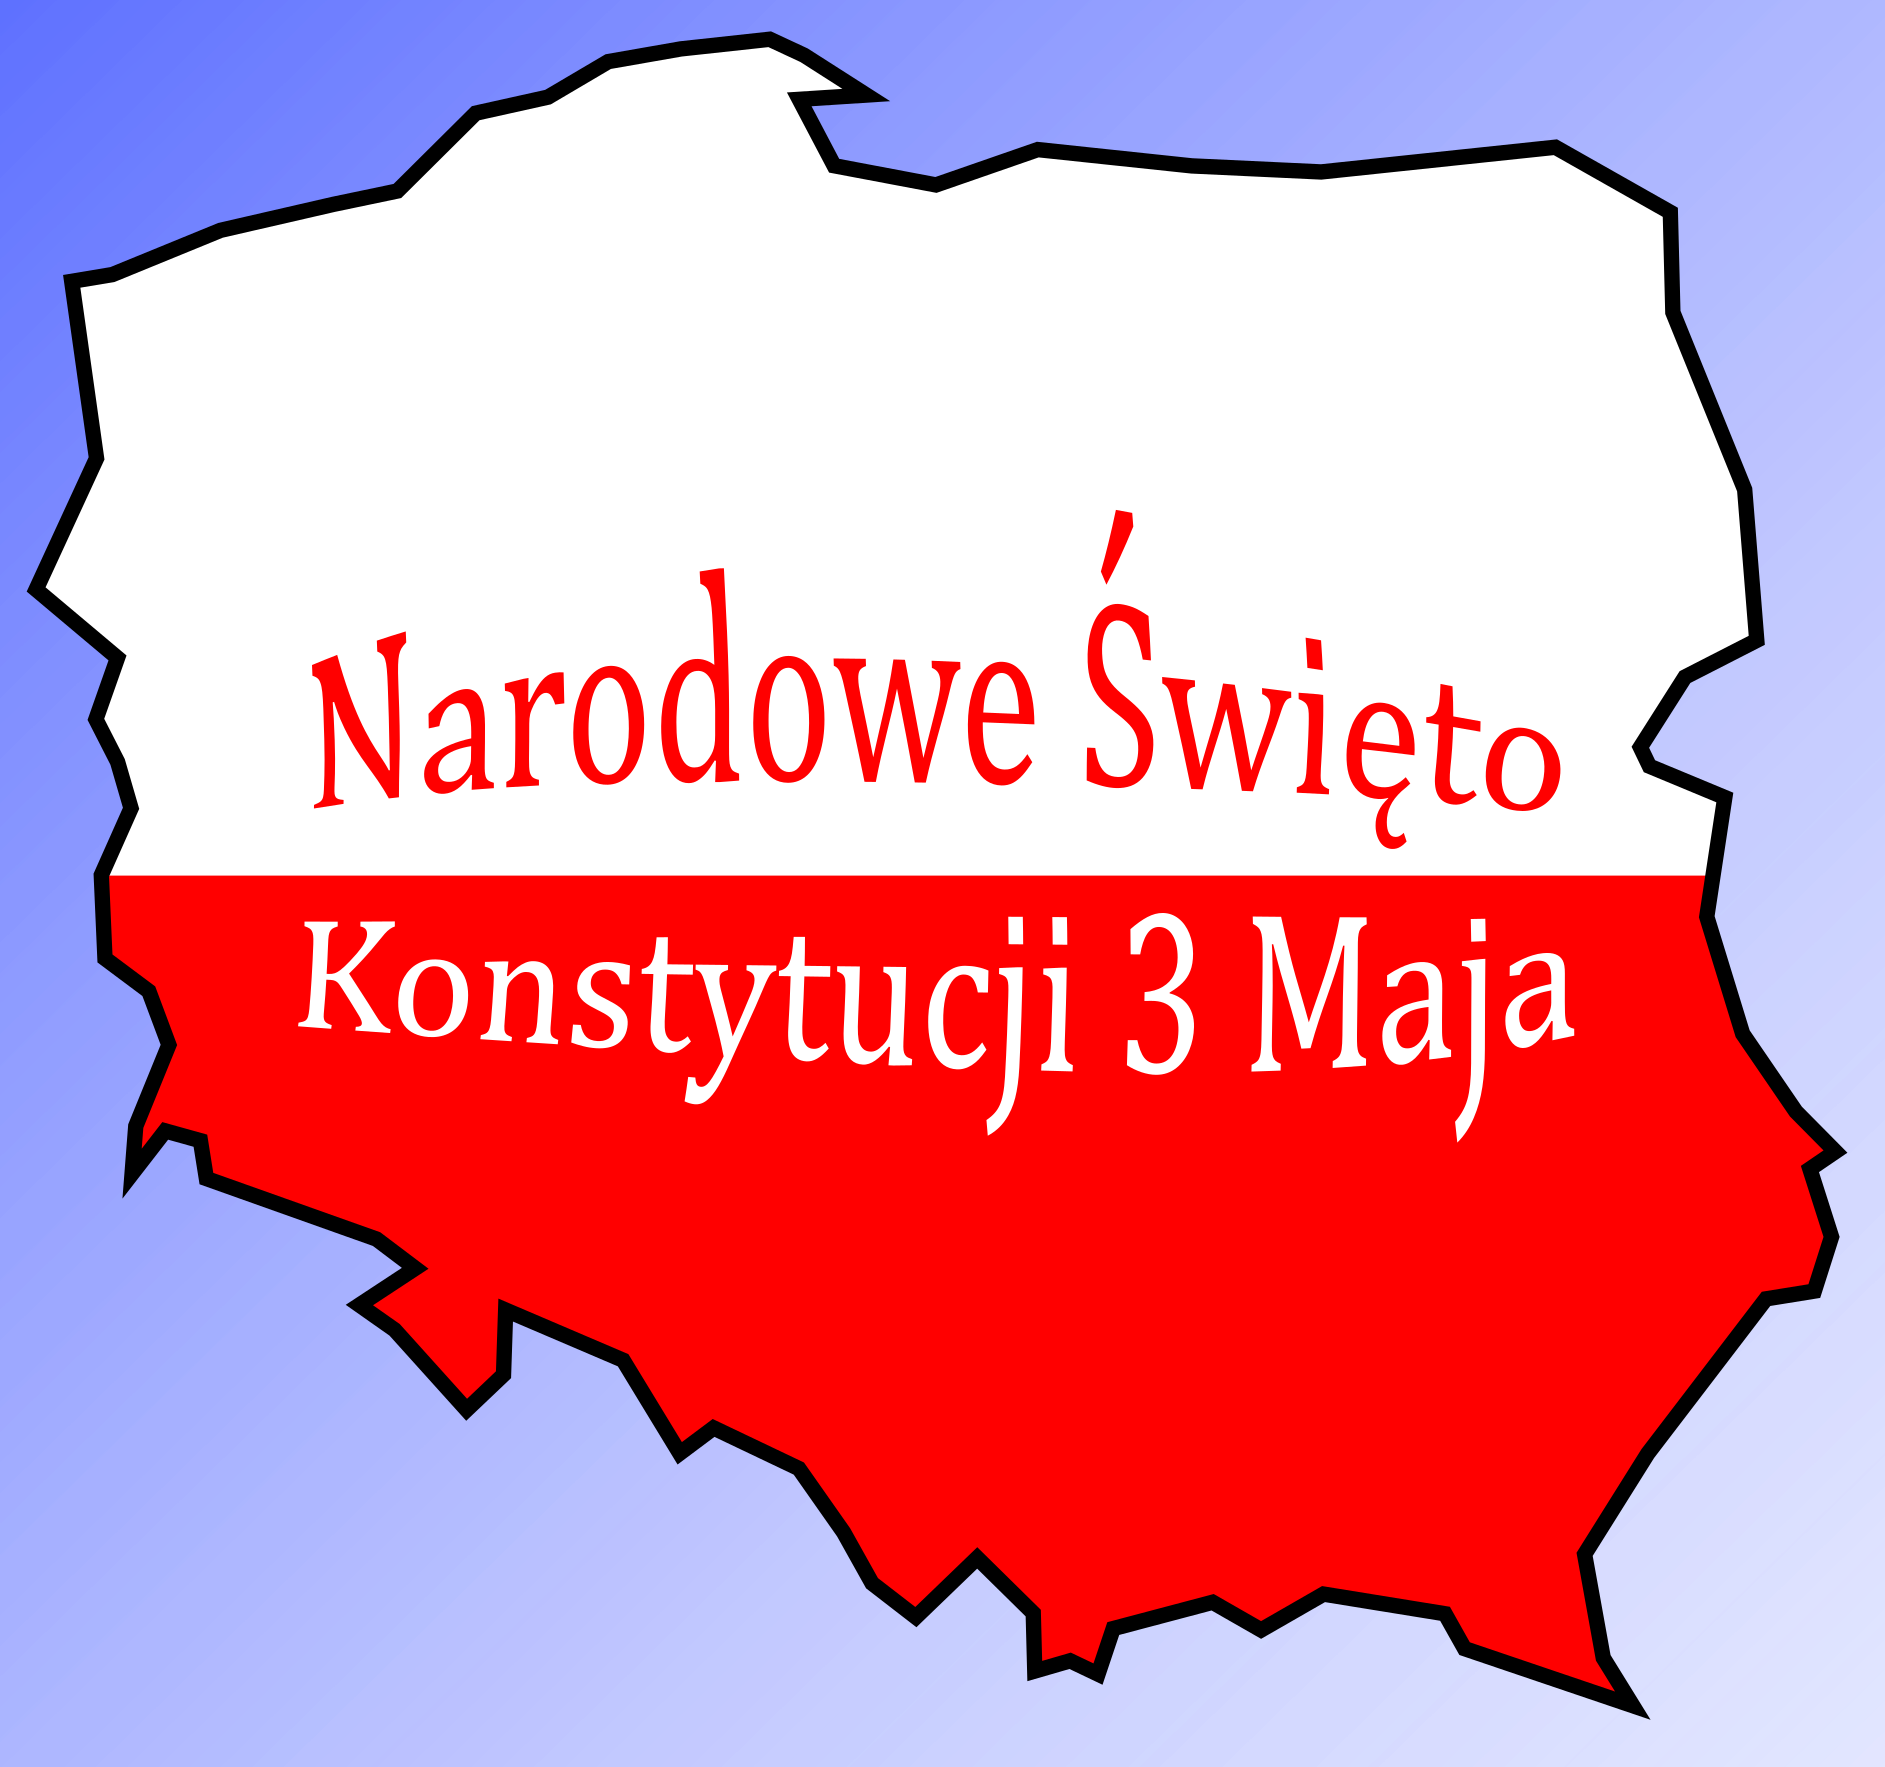 Kontury Polski w barwach narodowych. Napis Narodowe Święto Konstytucji 3 Maja.